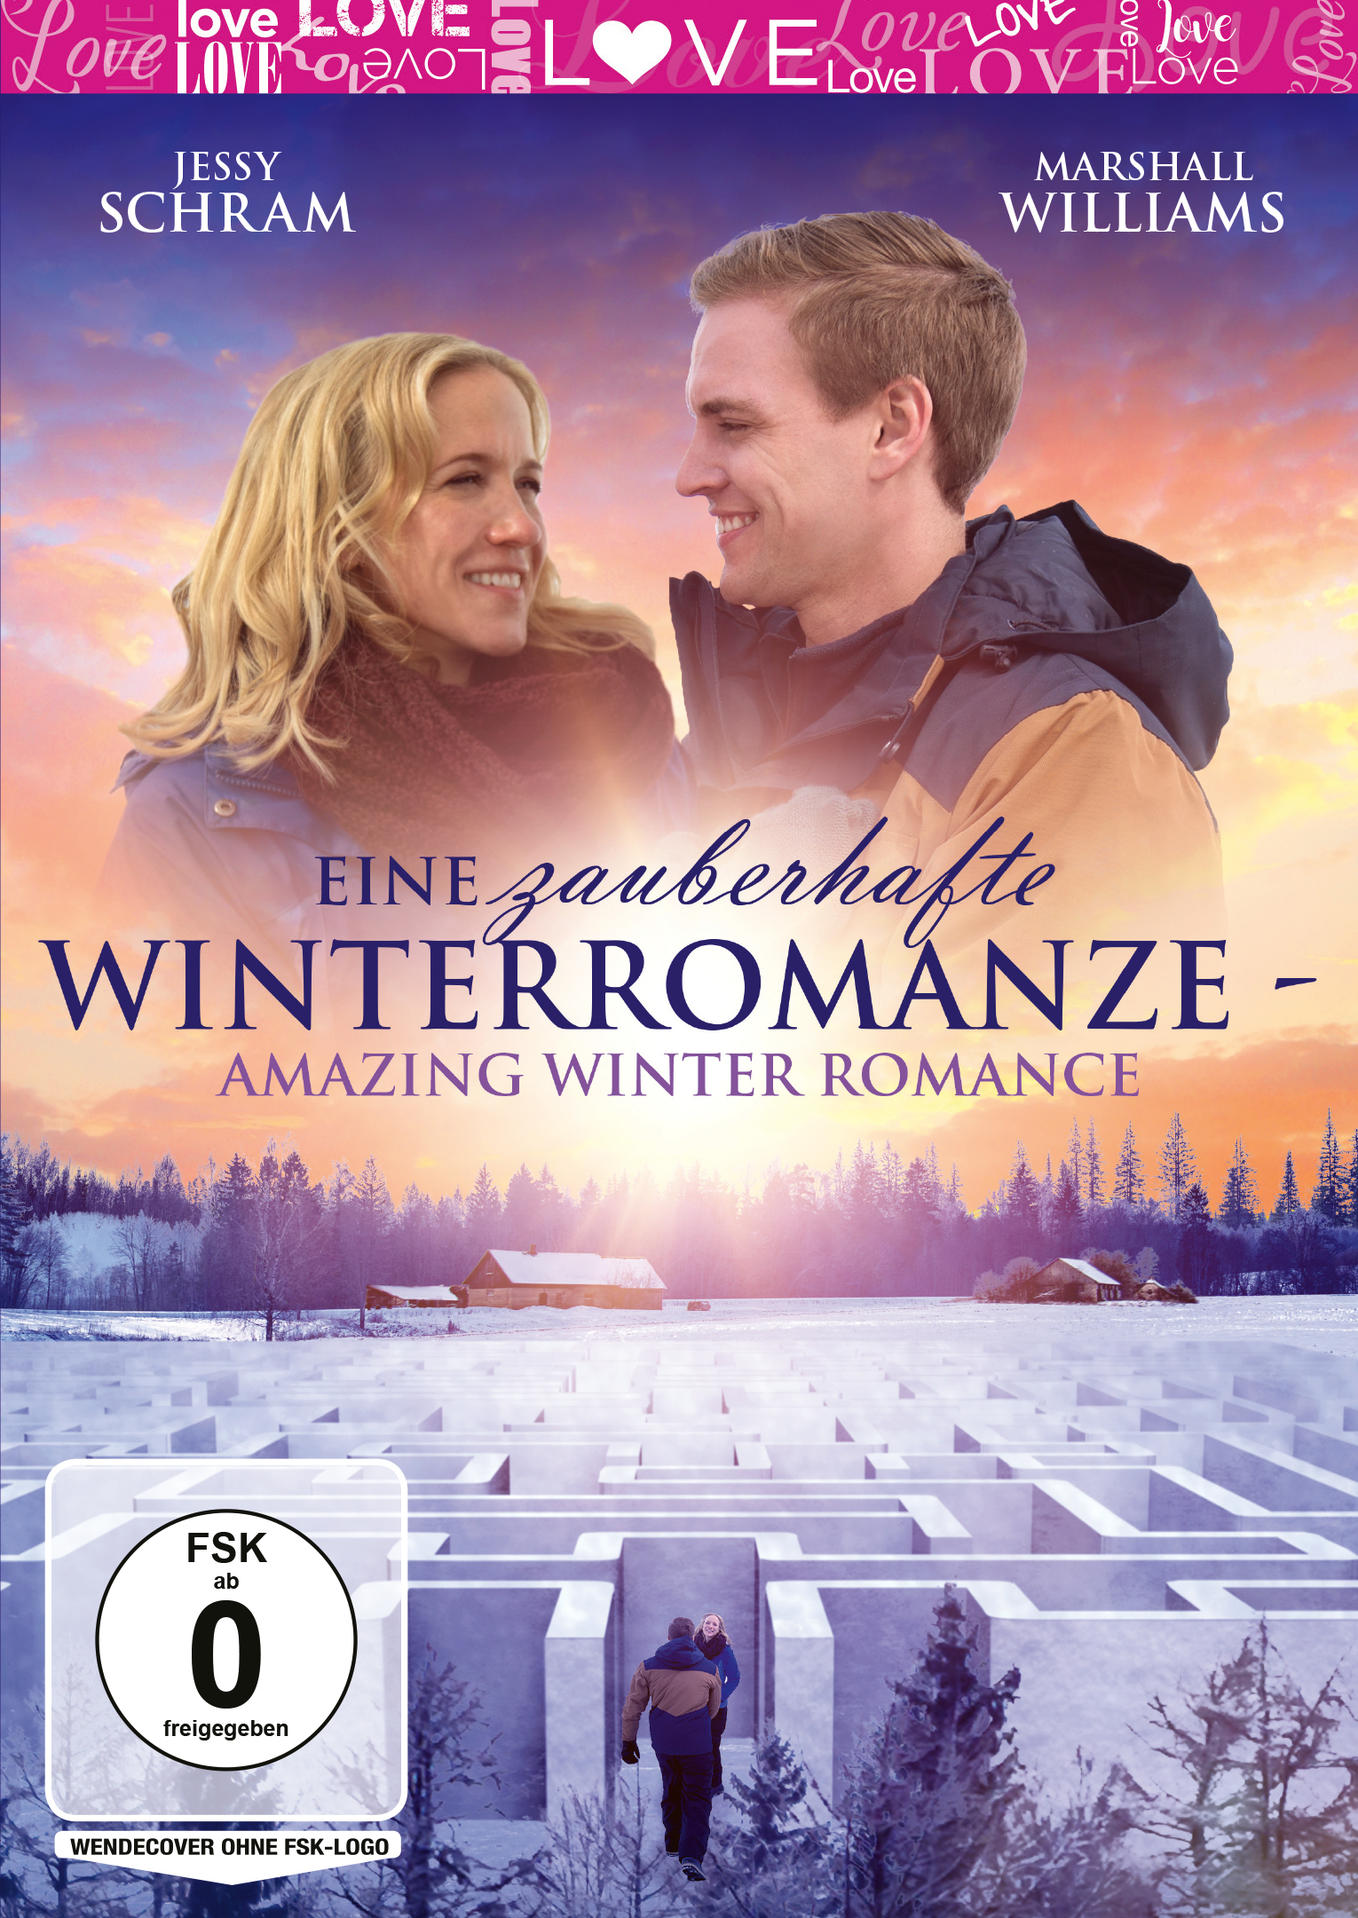 Eine zauberhafte Winterromanze - Winter Romance DVD Amazing